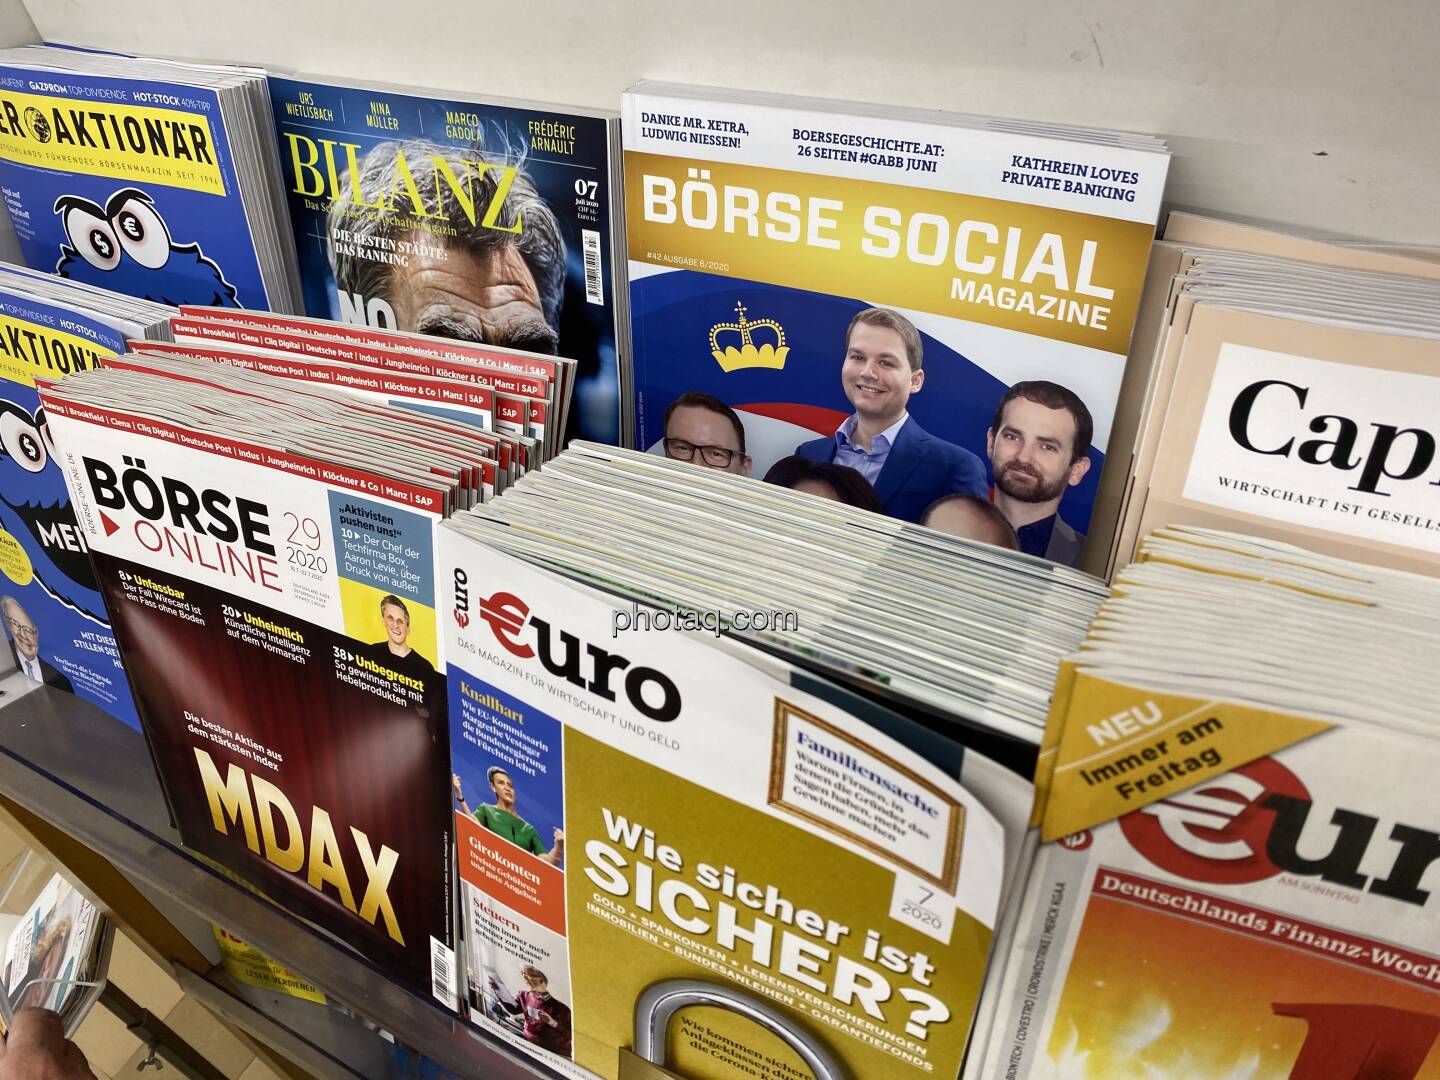 Börse Social Magazine #42, Kiosk, Morawa, Liechtenstein - Stabiler Nachbar
http://boerse-social.com/magazine